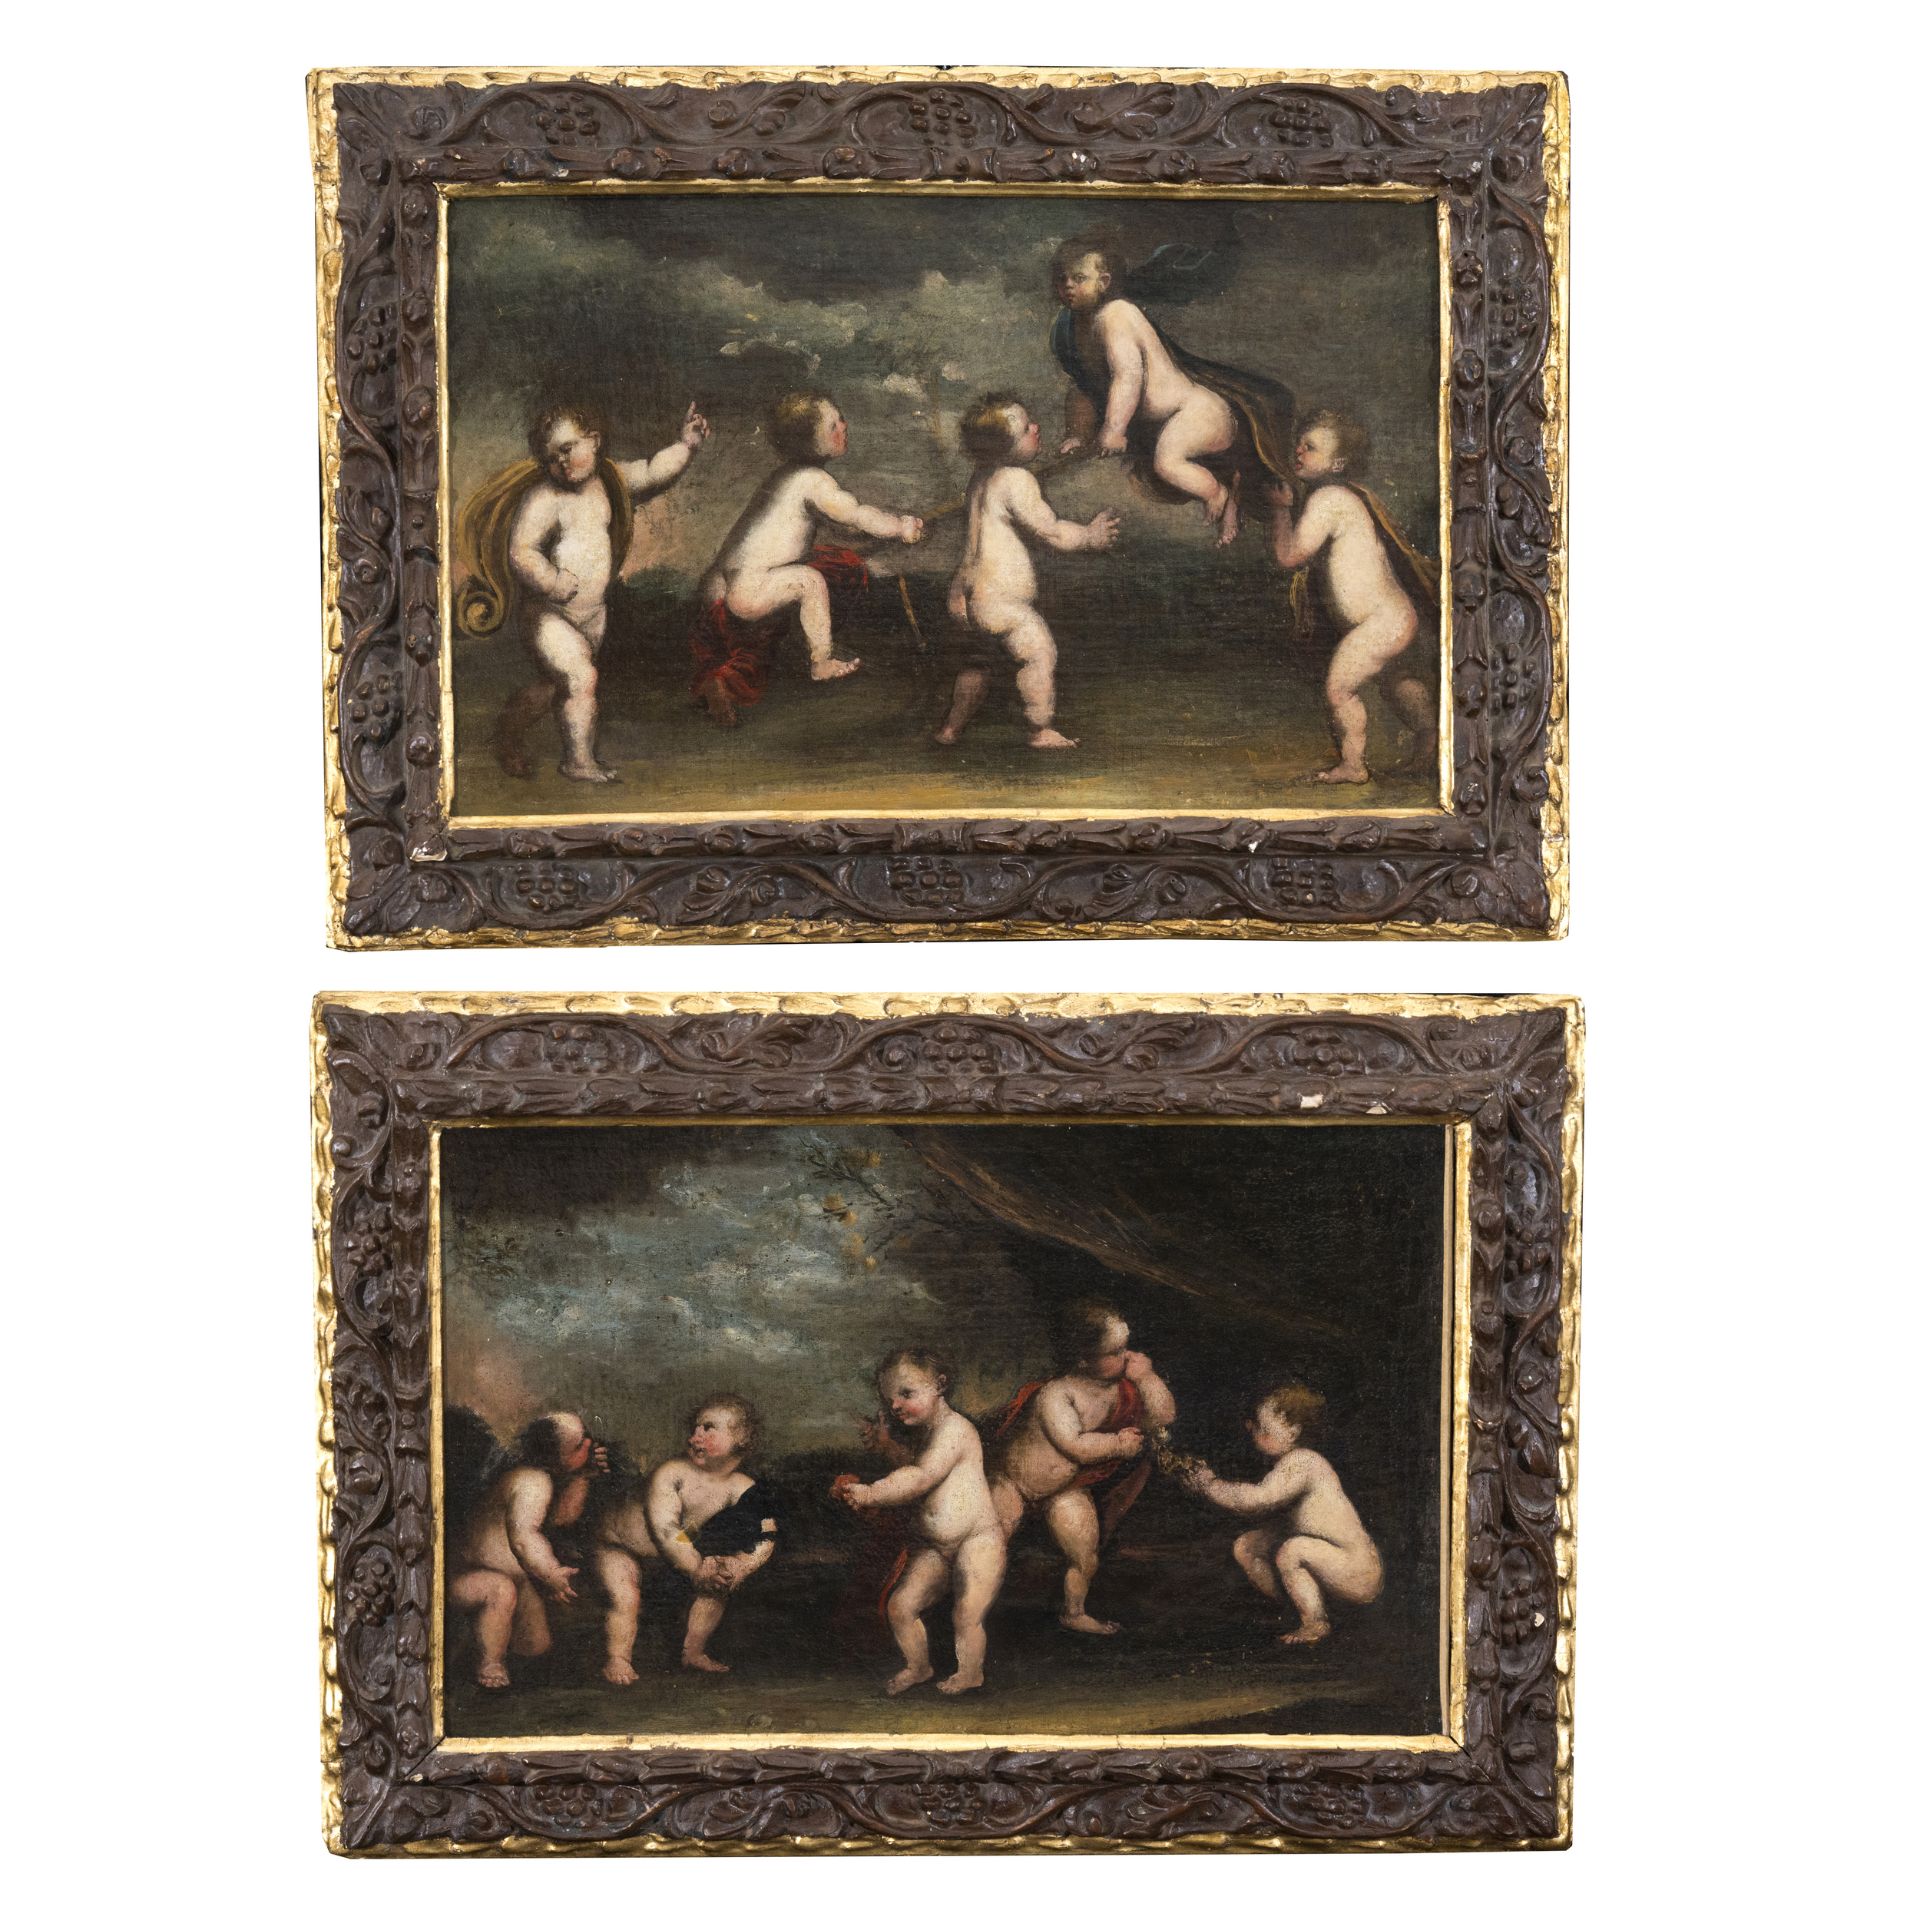 Scuola francese o italiana del XVII secolo - Bild 2 aus 5